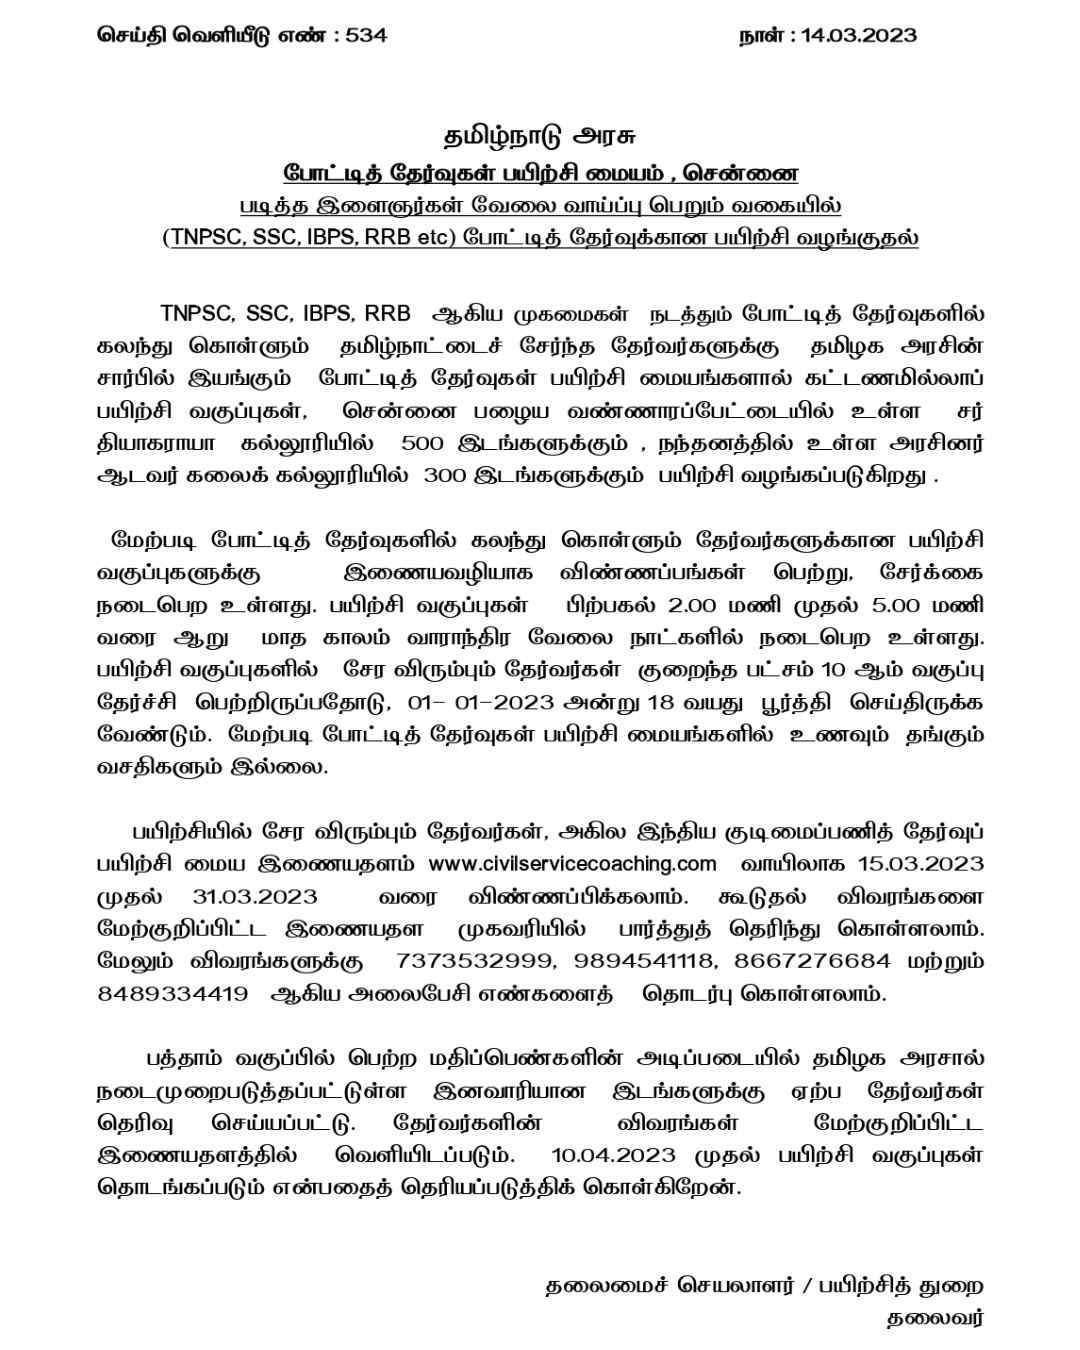 தமிழக அரசின் இலவச டிஎன்பிஎஸ்சி பயிற்சிக்கு விண்ணப்பிப்பது எப்படி? | Tamil Nadu Govt Free Coaching for Competitive Exams